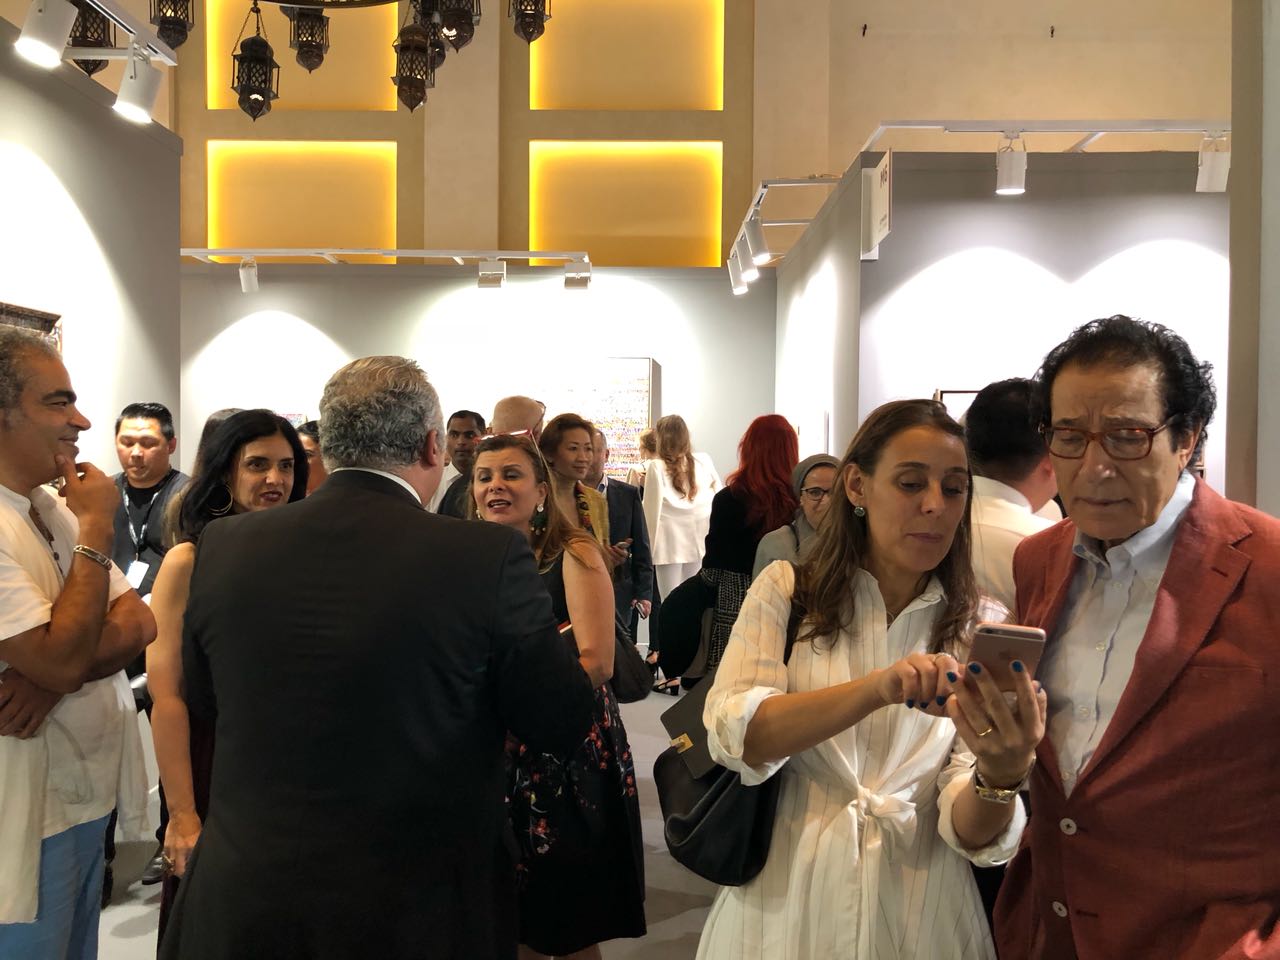 فاروق حسني يزور معرض الفنون التشكيلية في دبى (6)